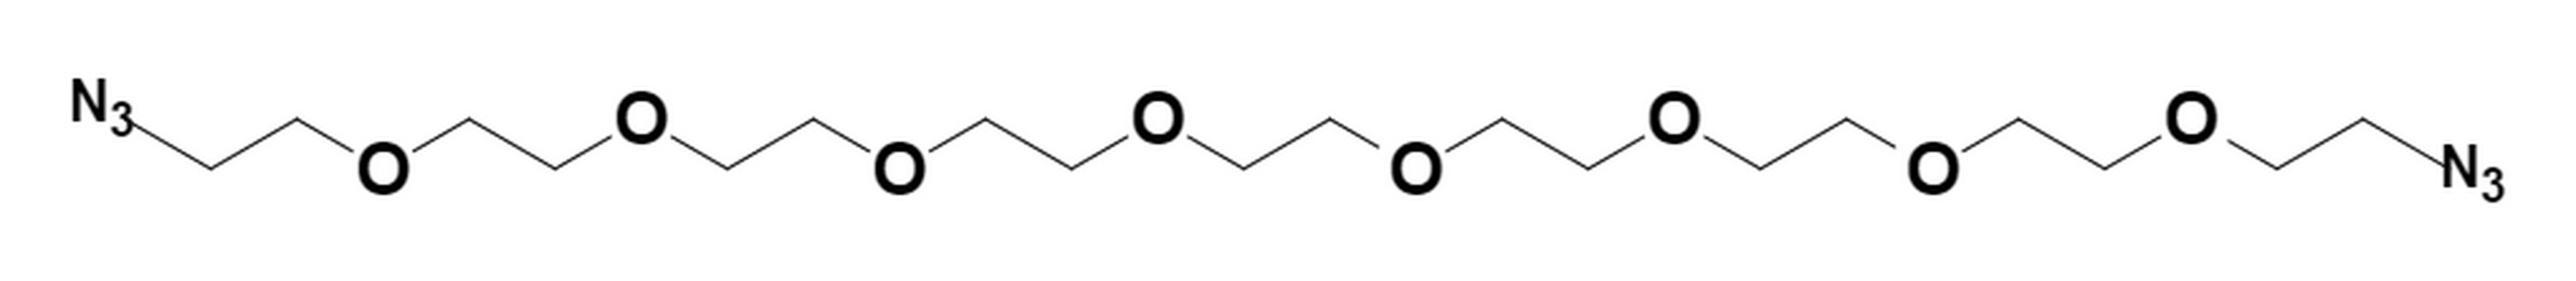 Azido-PEG8-azide